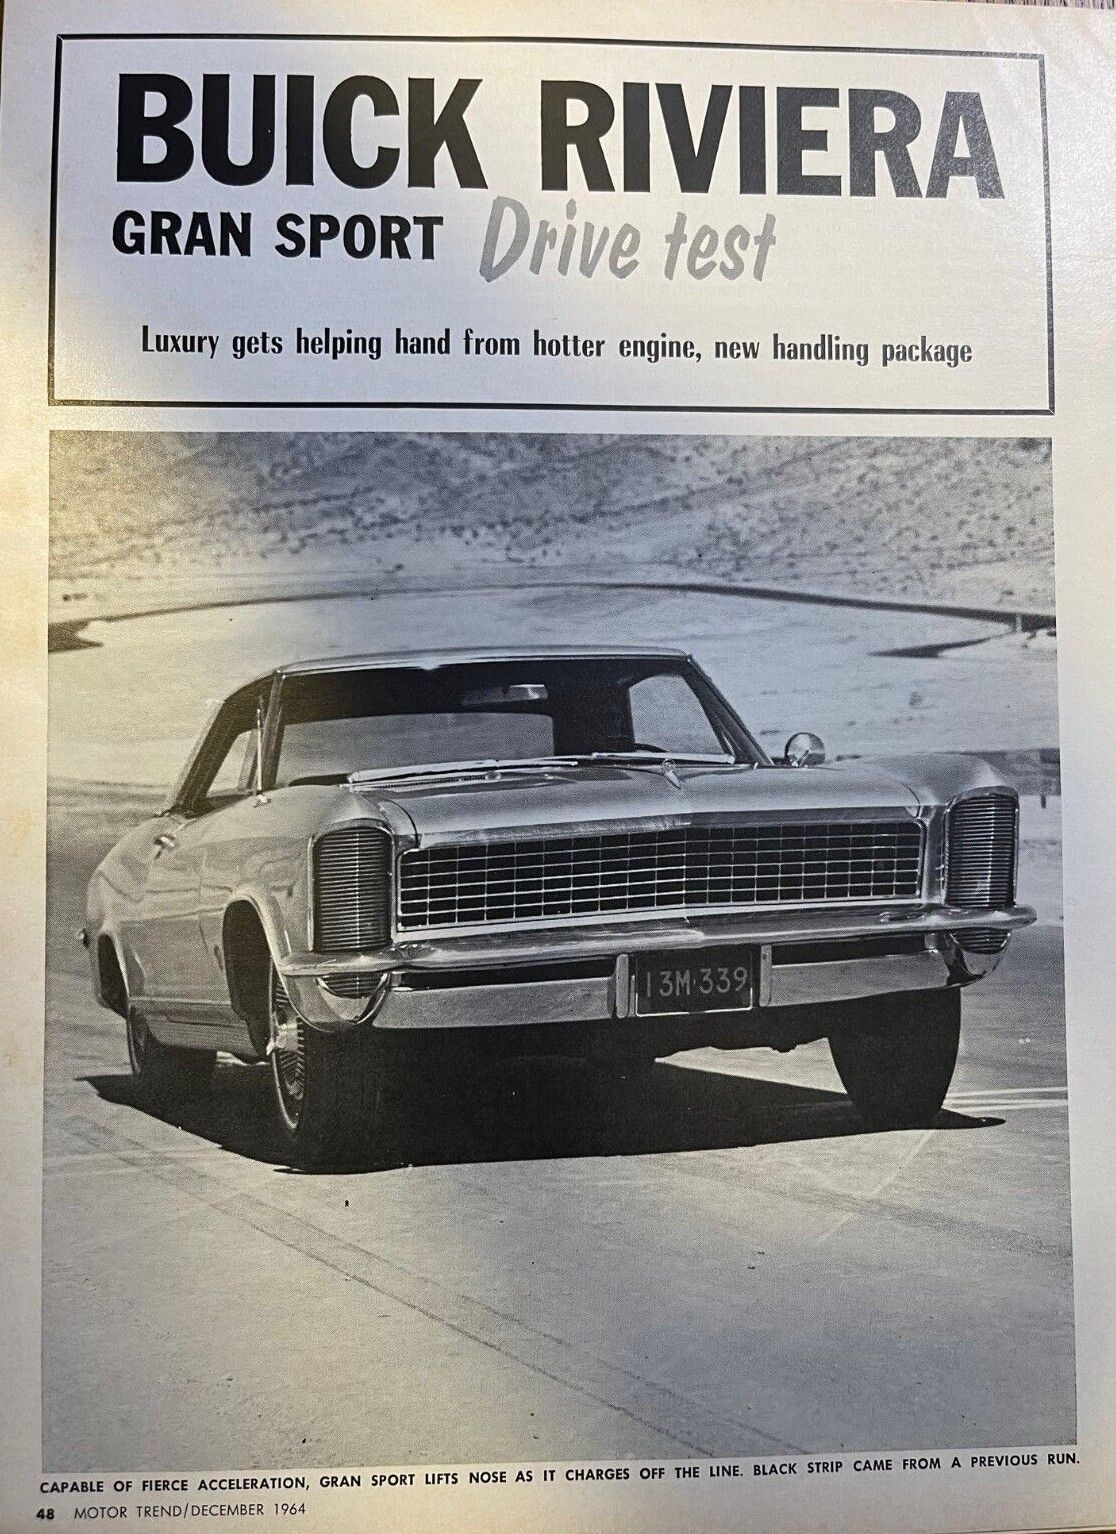 Road Test 1965 Buick Riviera Gran Sport illustrated